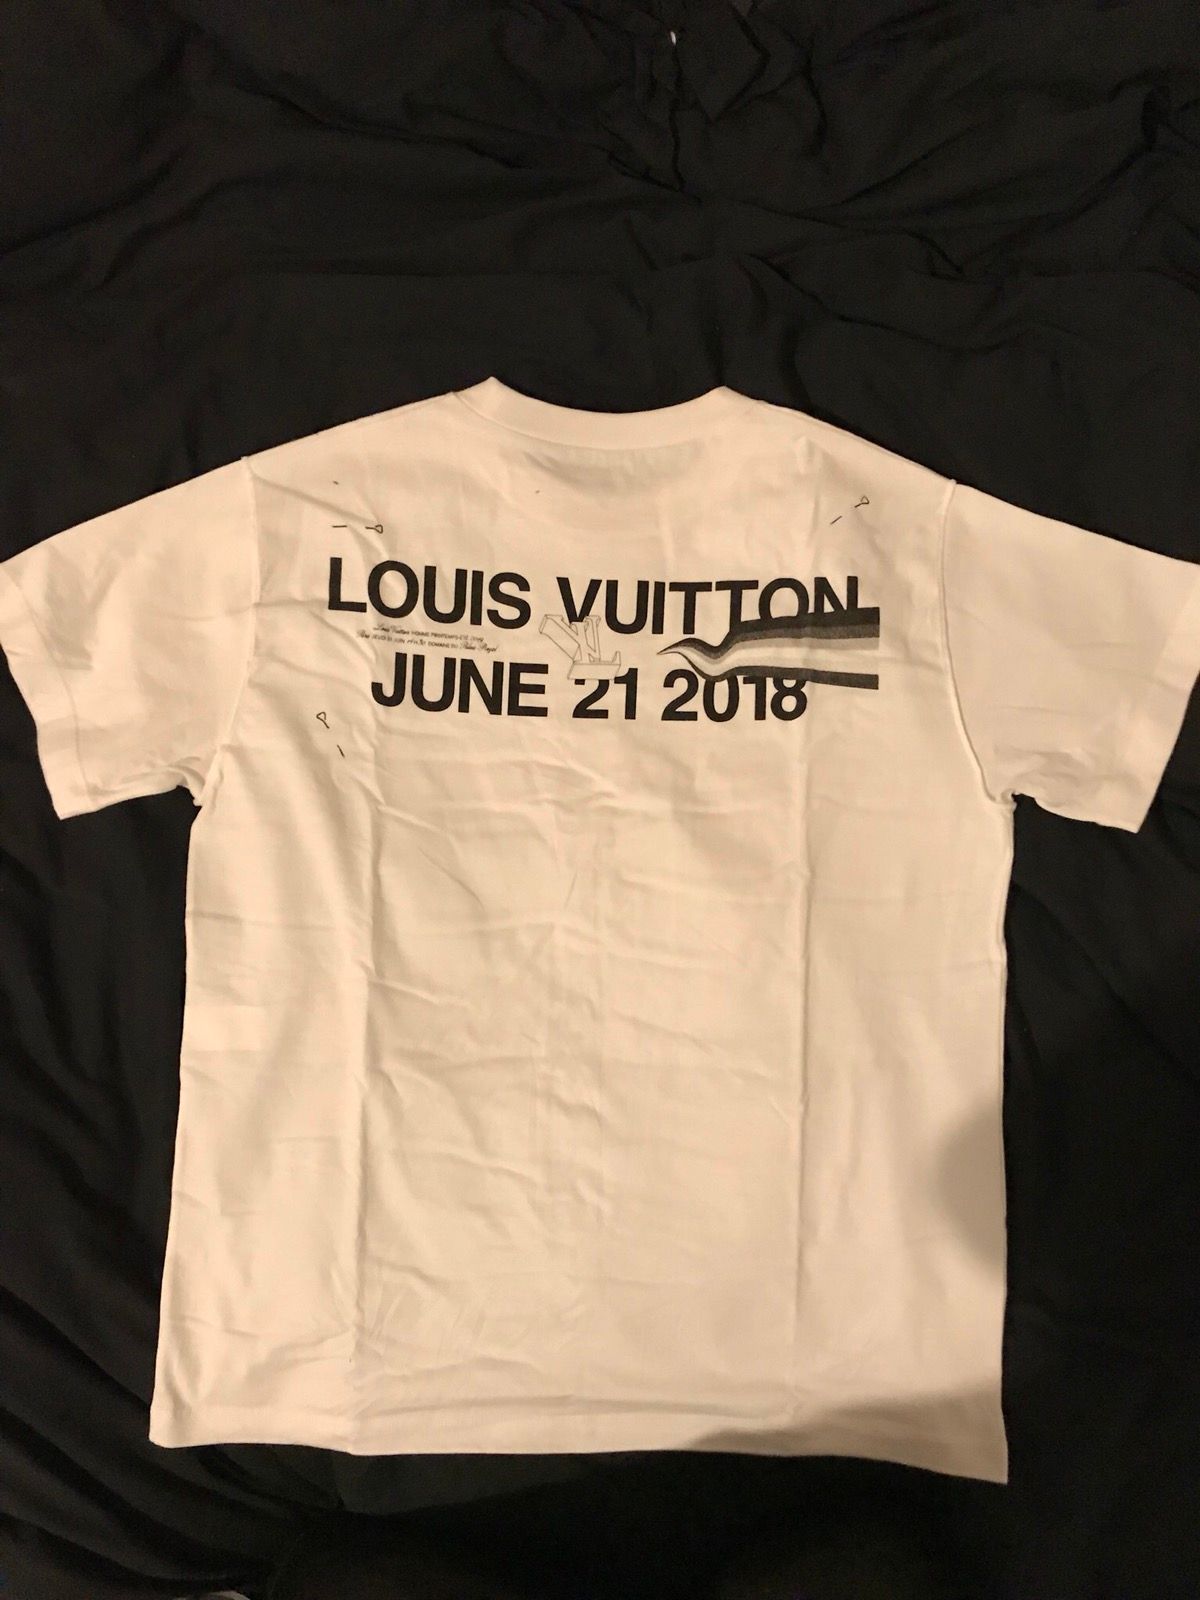 Louis Vuitton Virgil Abloh T Shirt For The SS19 Louis Vuitton Men's Show